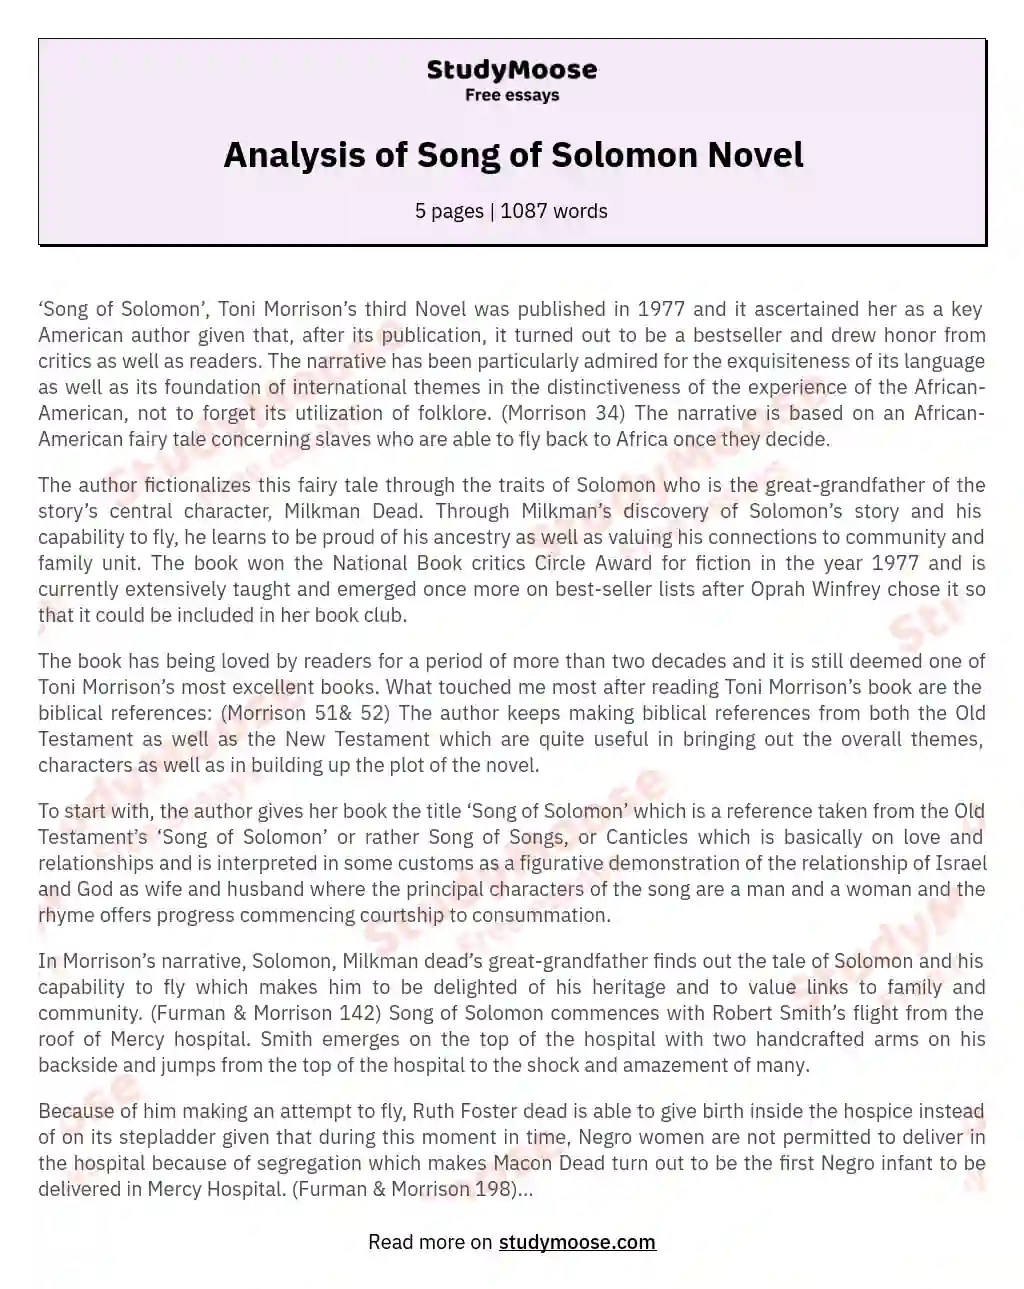 Analysis of Song of Solomon Novel